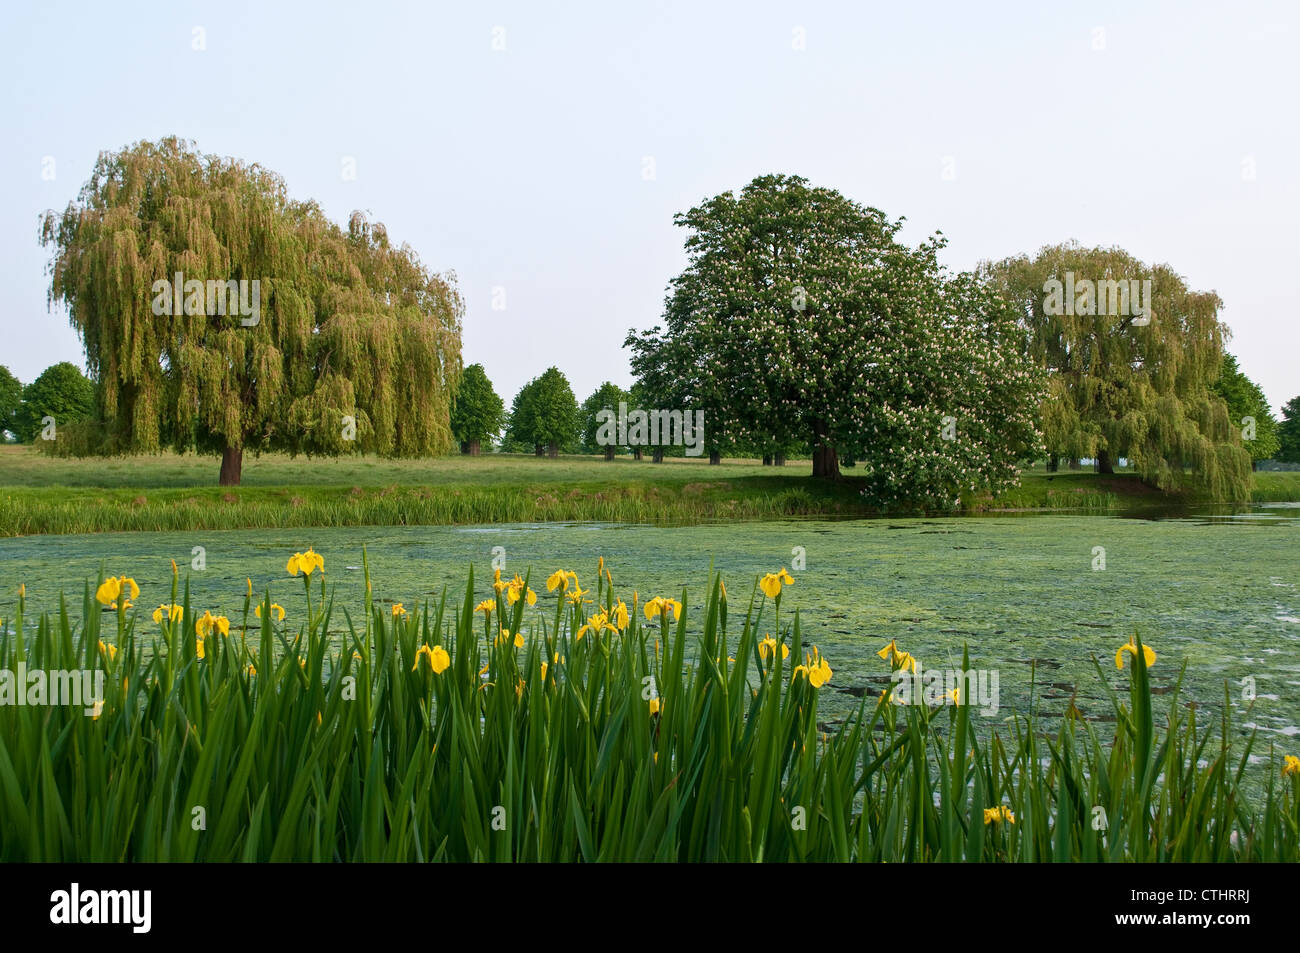 Scène de l'étang avec iris jaunes sauvages, arbres et marronnier d'arbre, Home Park, Hampton Wick, Surrey, England, UK Banque D'Images